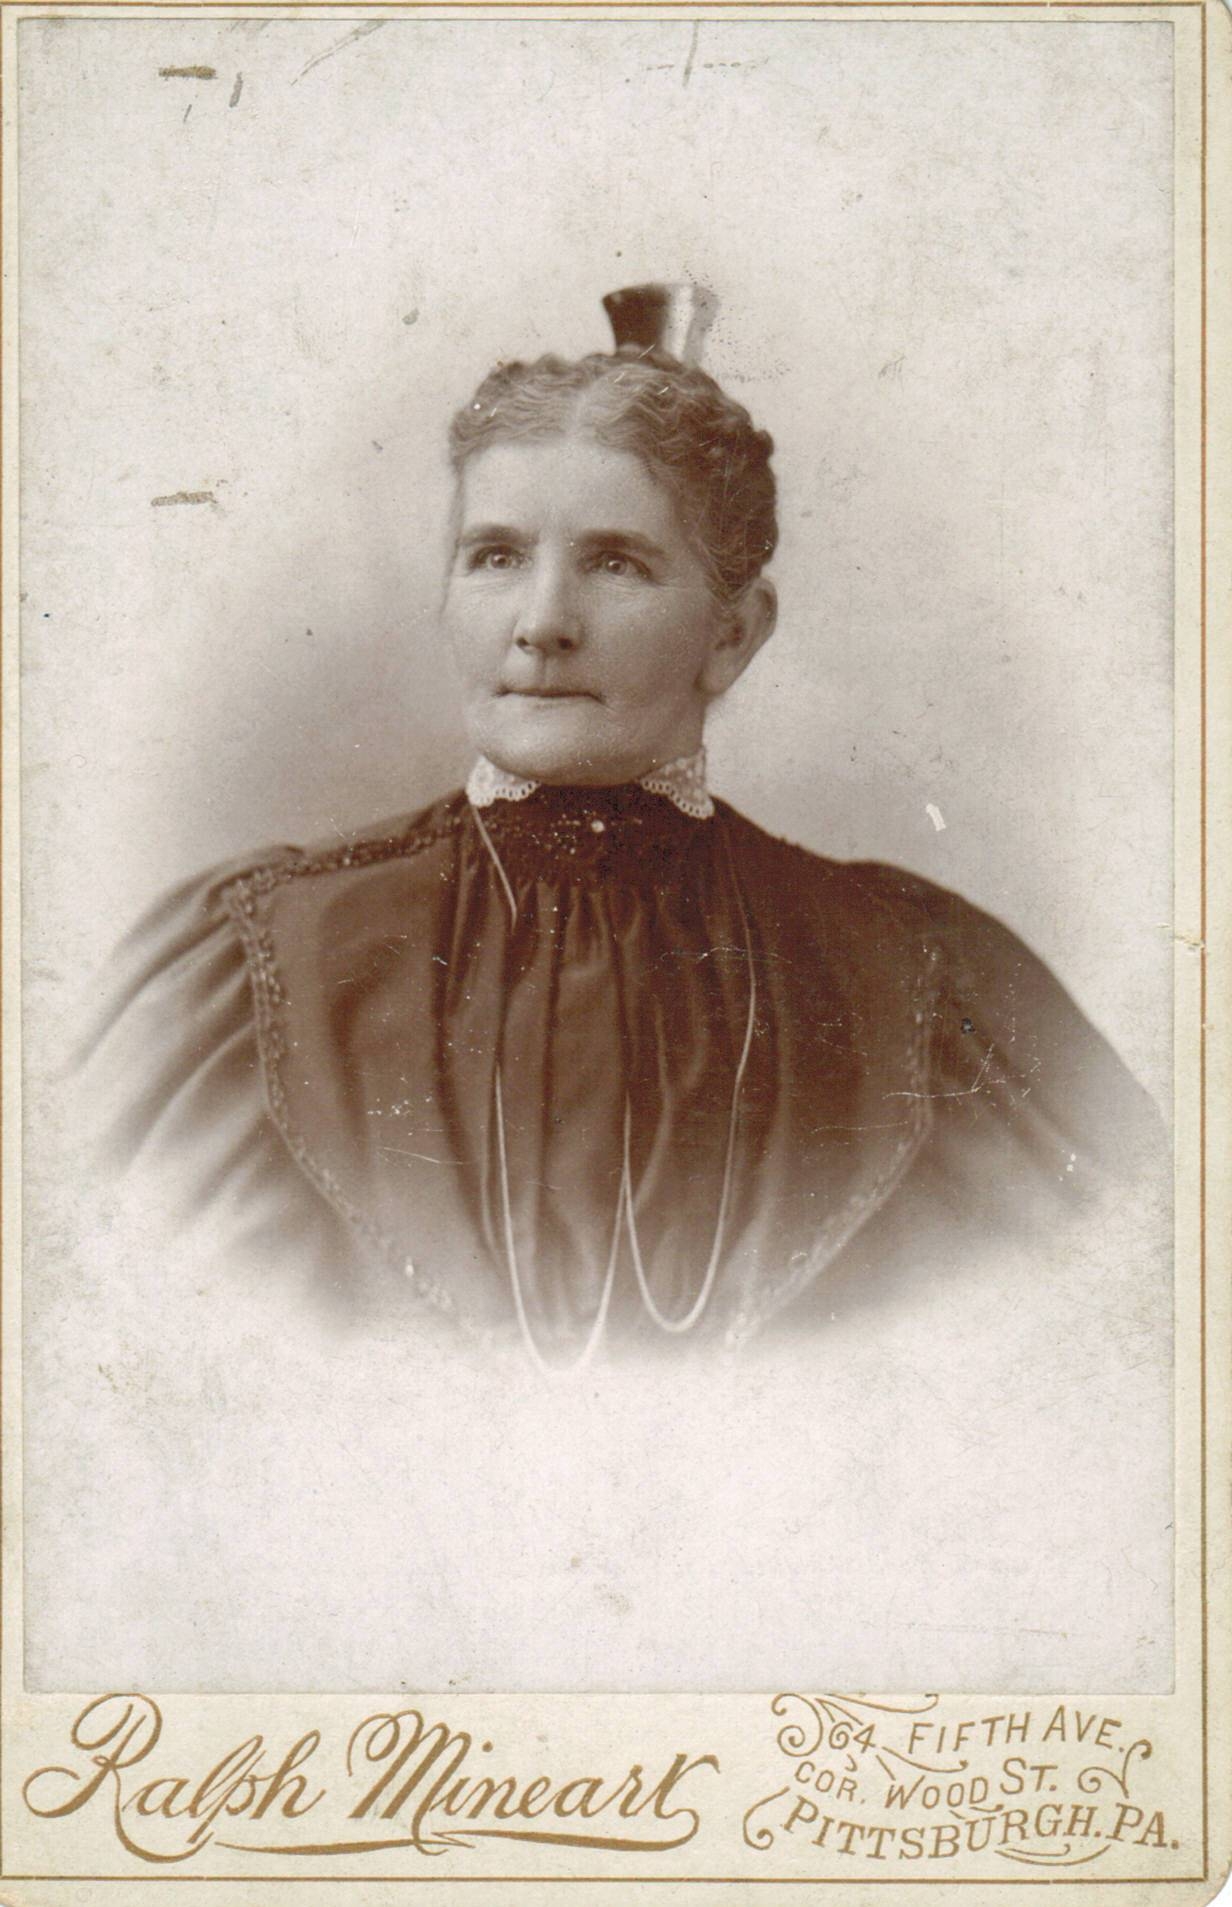 Ann Griffiths Rees b. 1841 